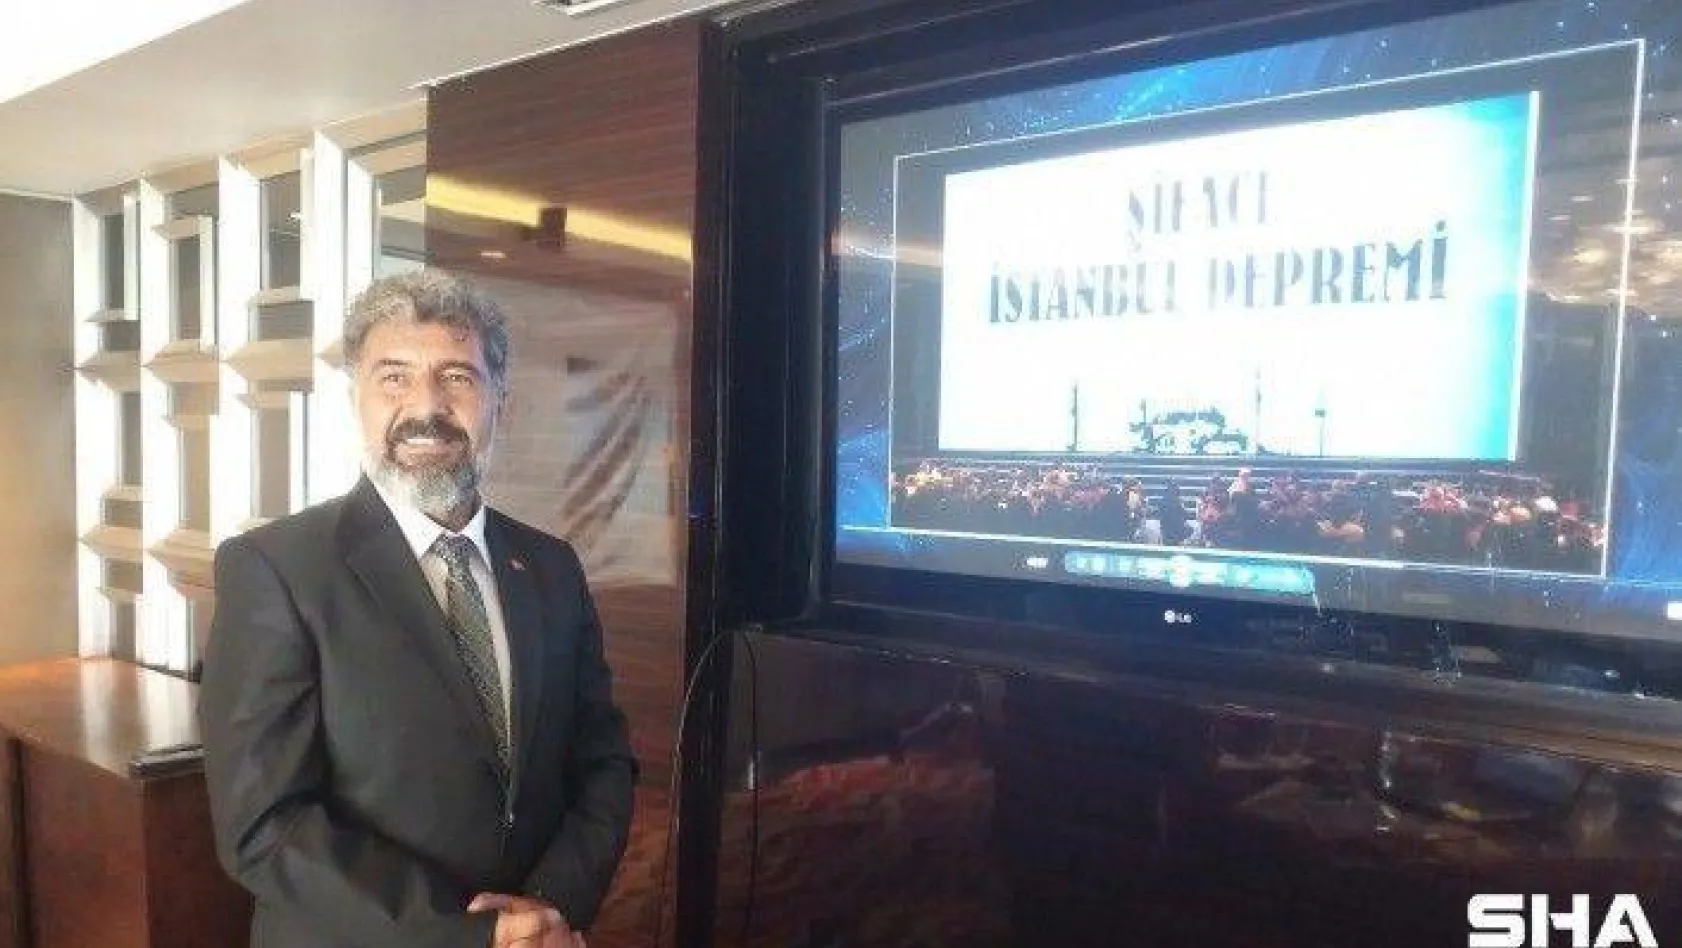 Şifacı İstanbul Depremi filminin tanıtımı yapıldı